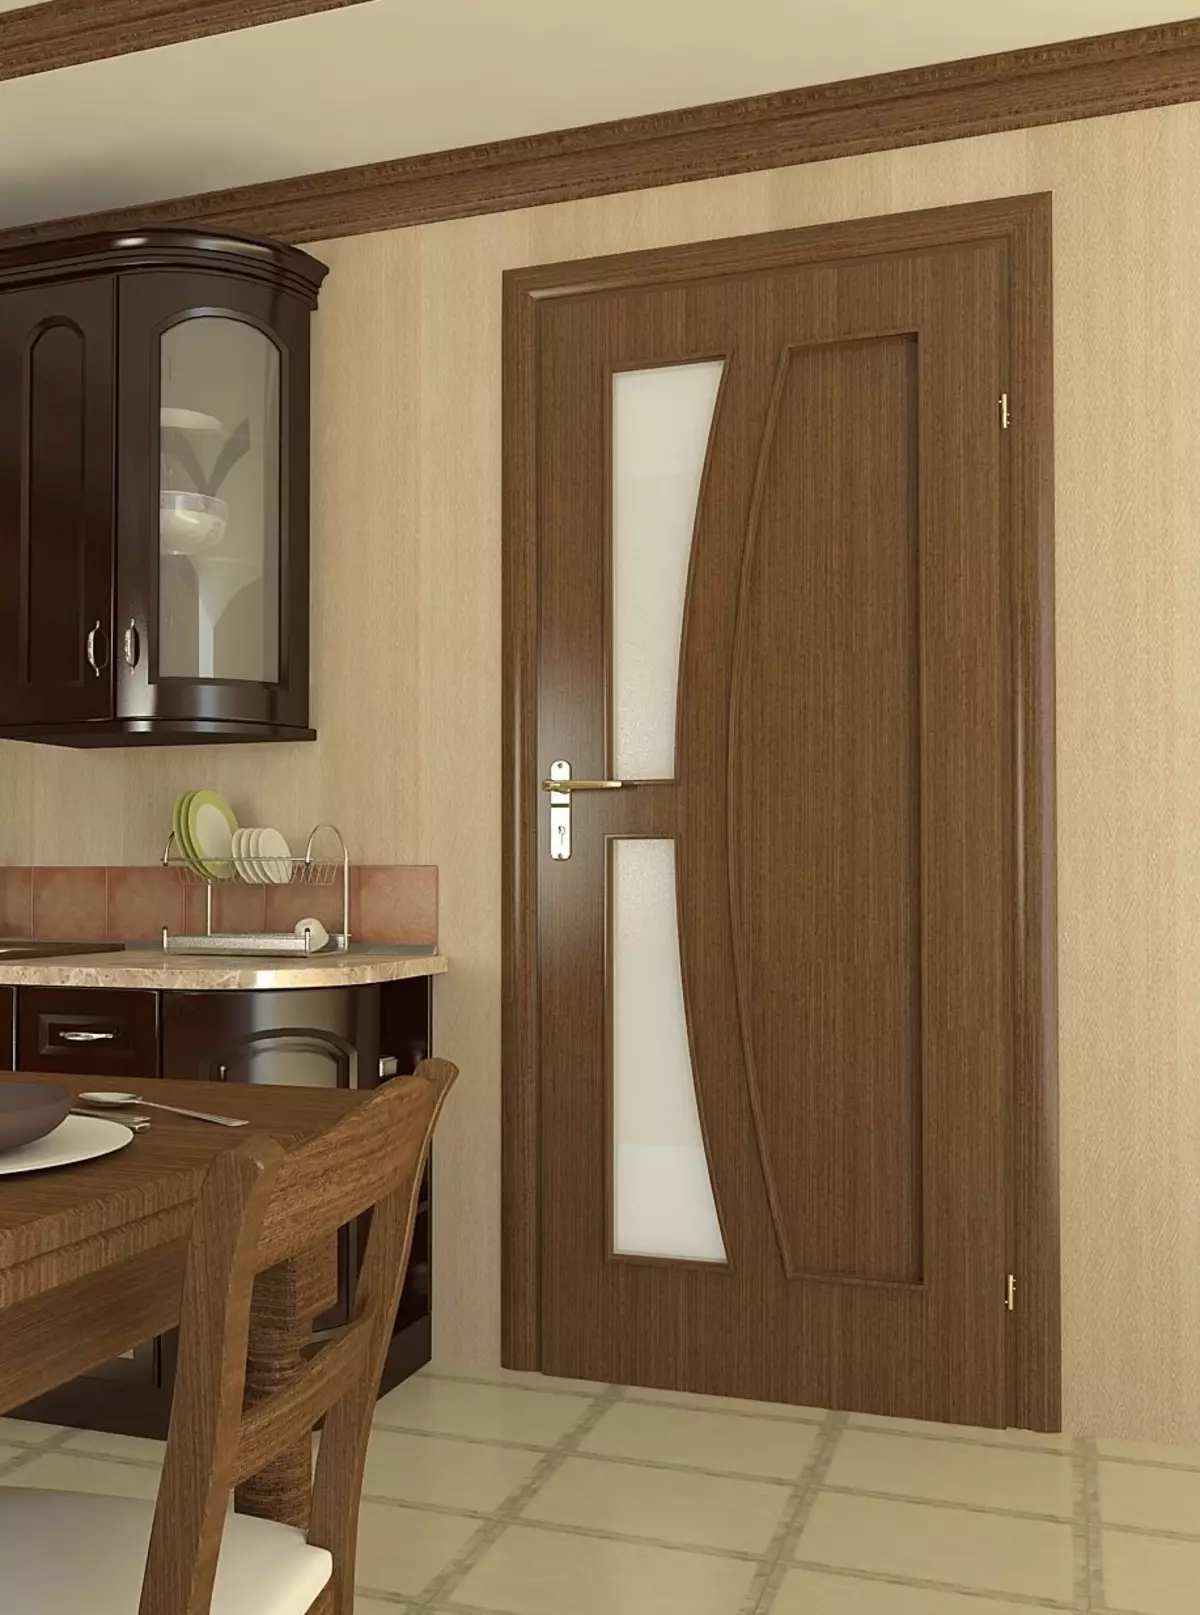 Купить двери на кухню. Дверь на кухню. Межкомнатные двери на кухню. Кухонные двери в интерьере. Современные двери на кухню.